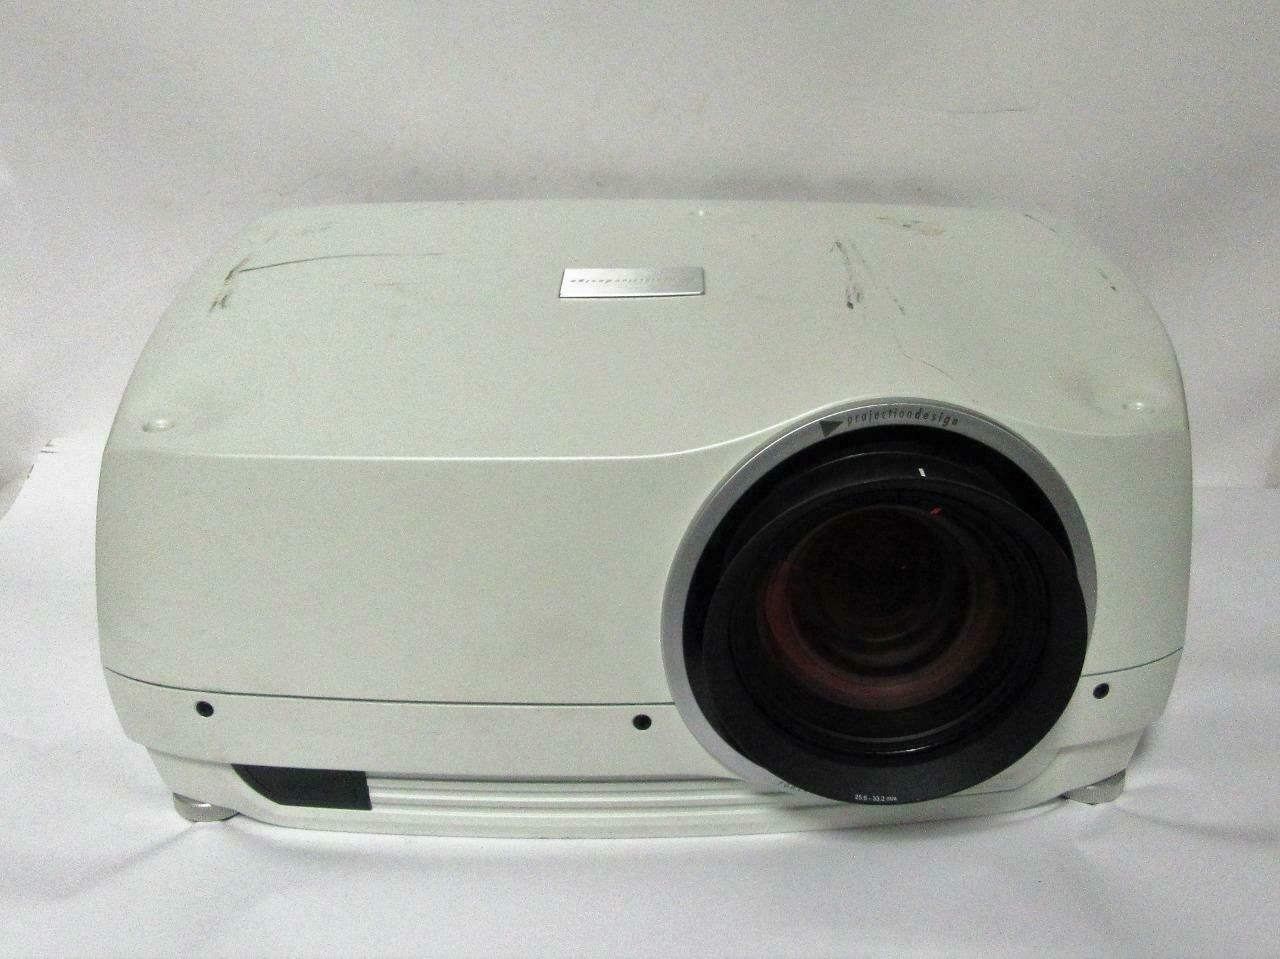 Projection Design F35 Wqxga Vizsim Gp3 Projector W/ Lens (l1 703h, L2 905h)